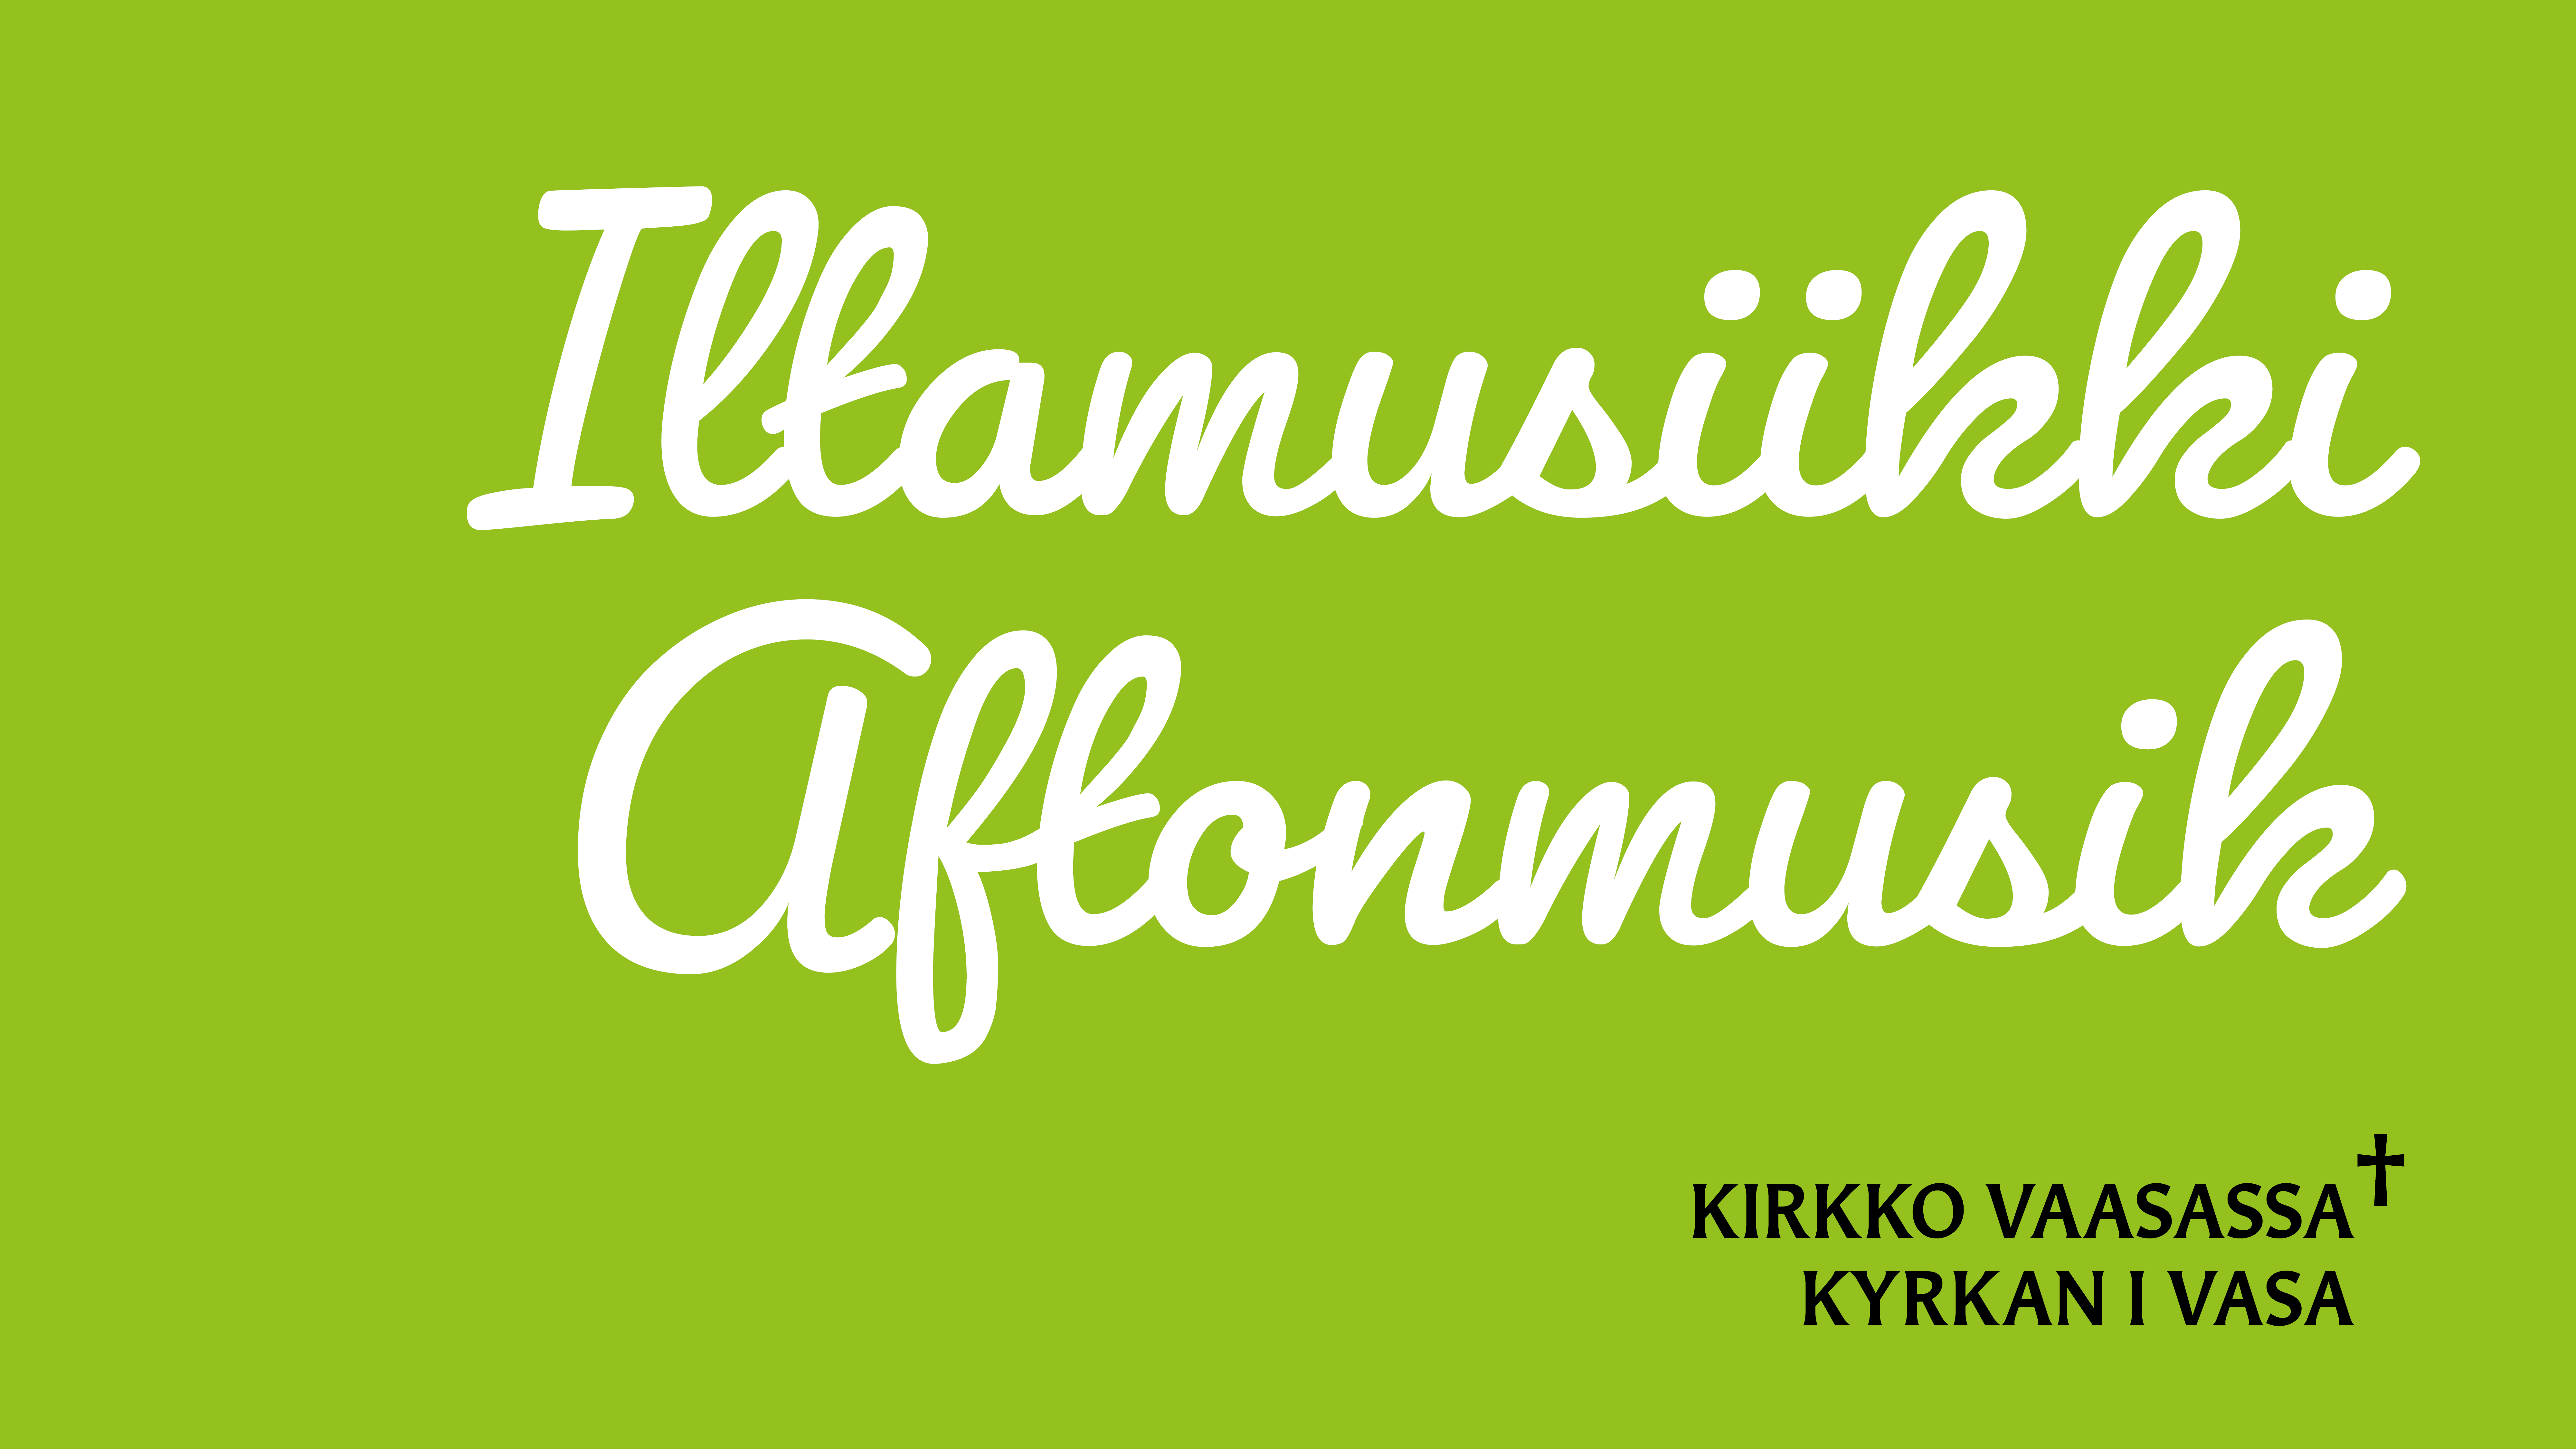 Text: Iltamusiiiki Aftonmusik, Kirkko Vaasassa Kyrkan i Vasa.